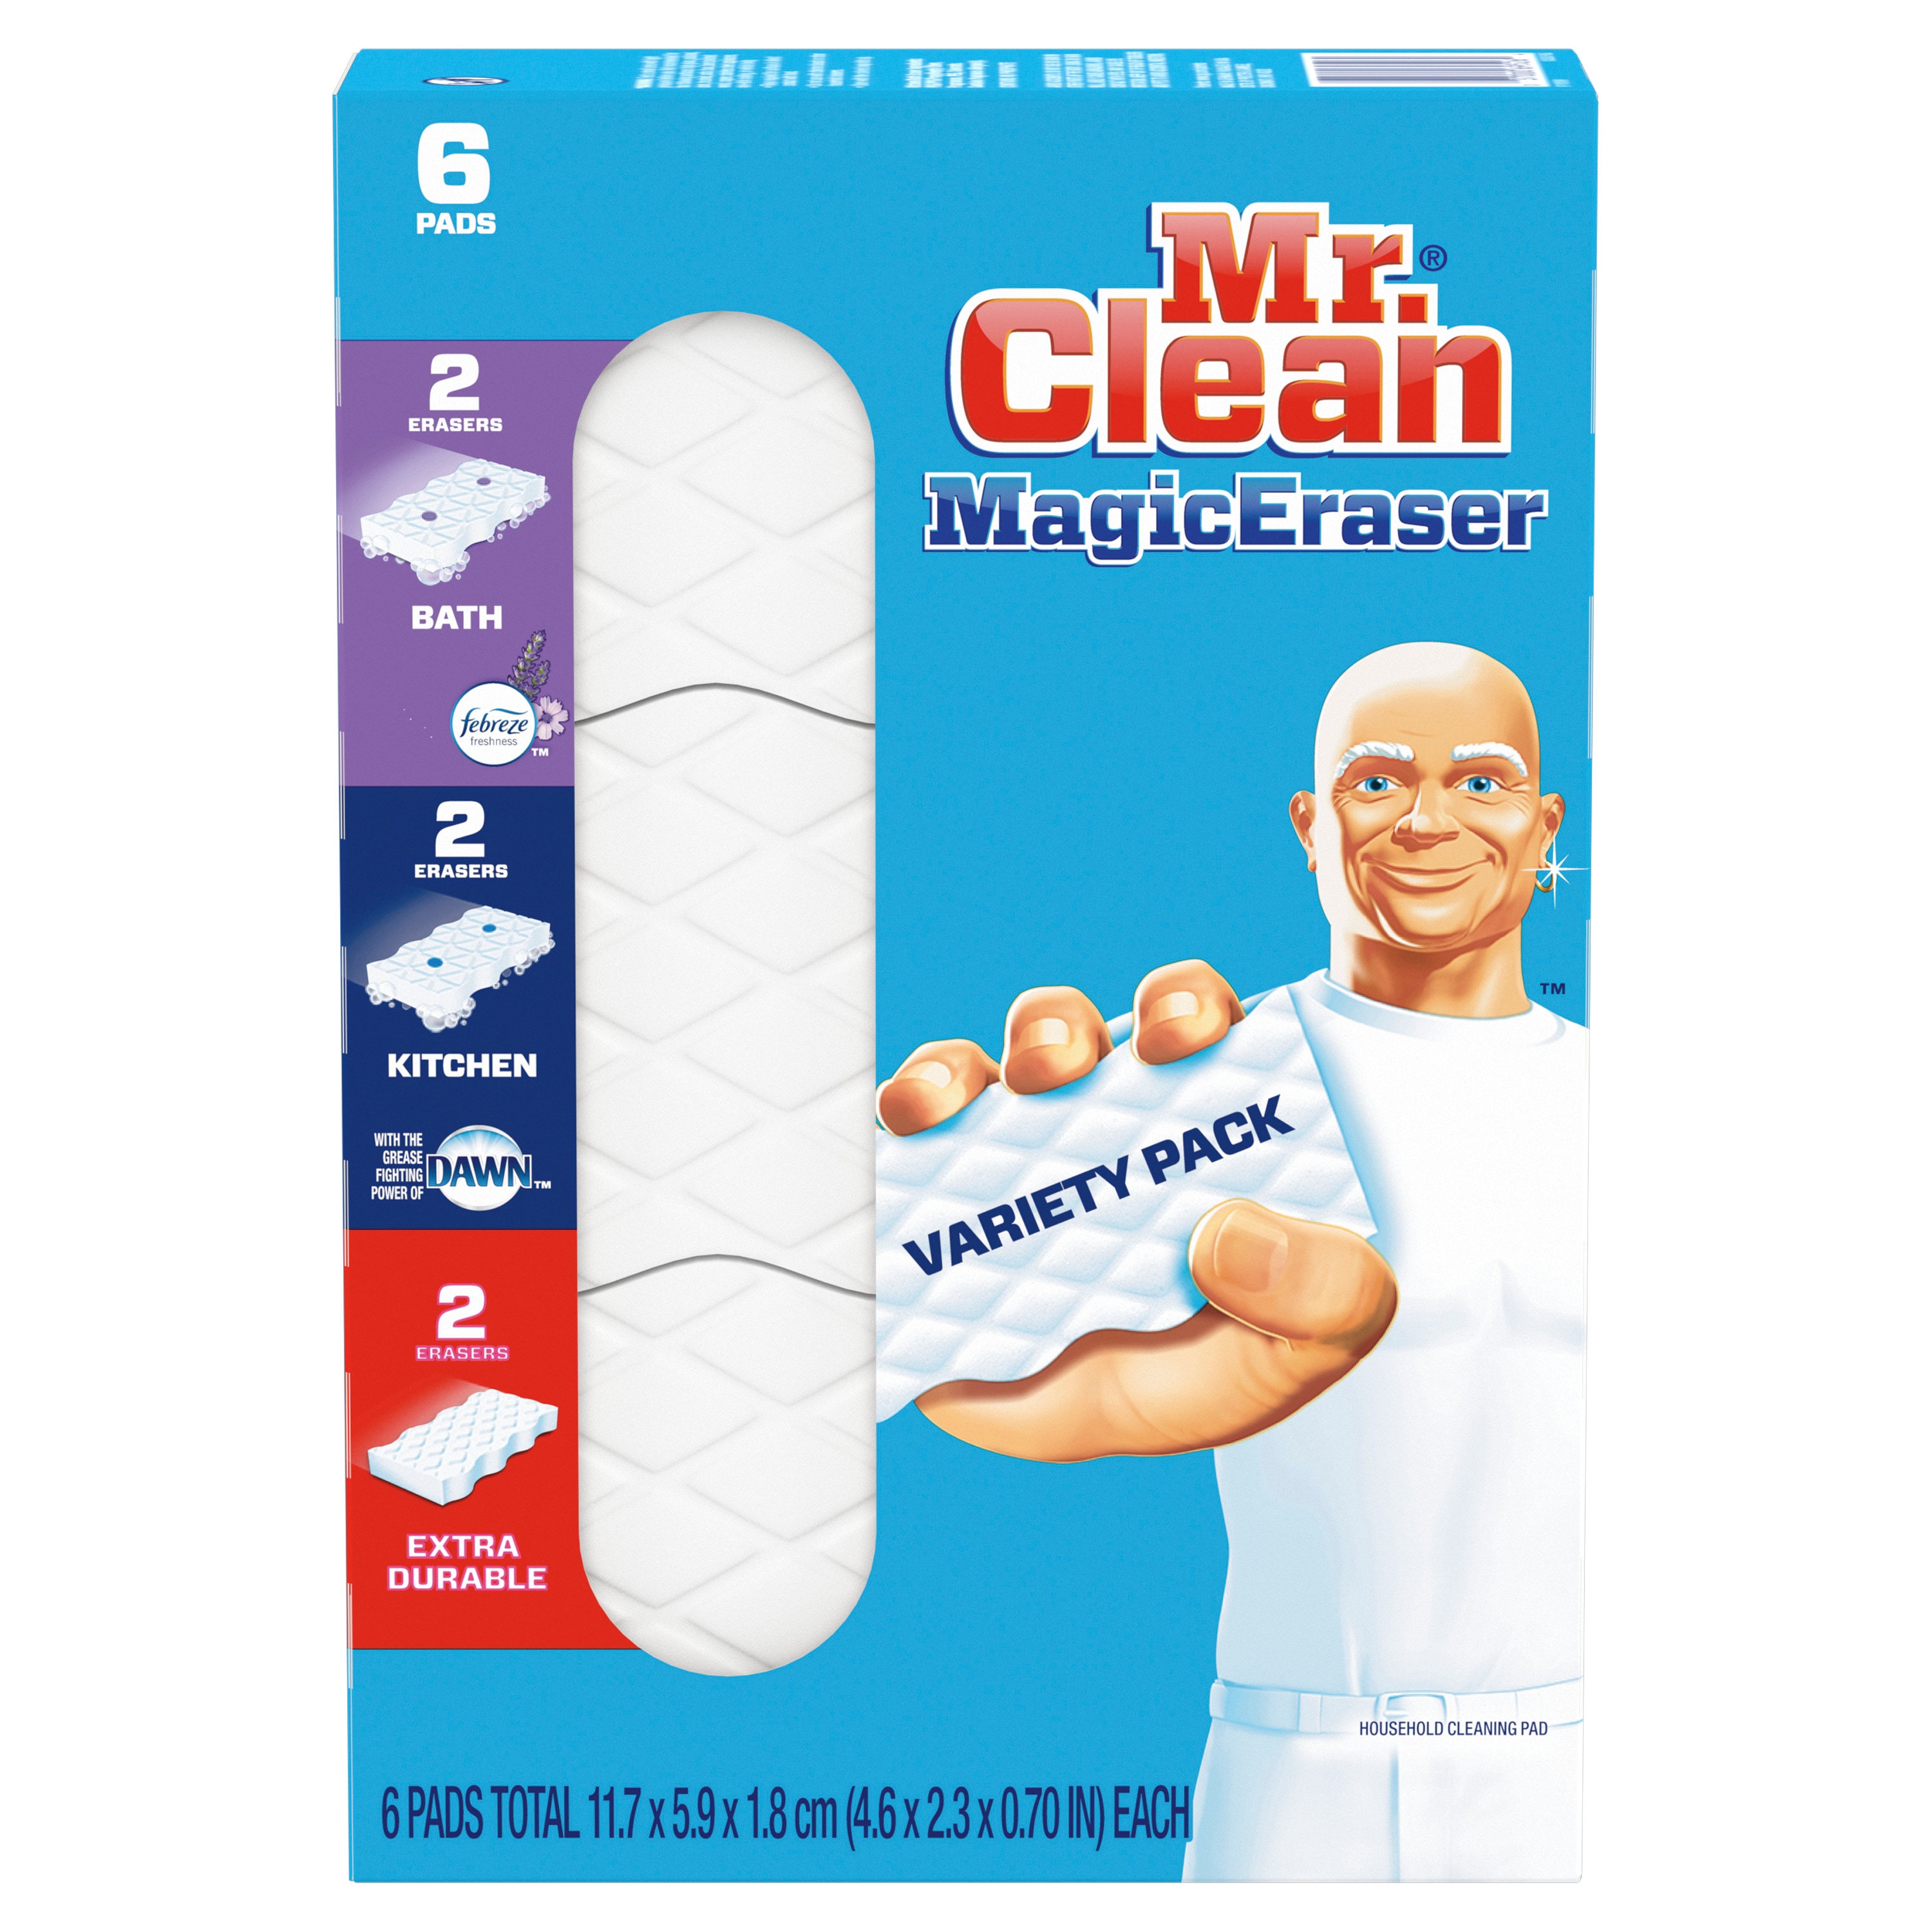 Bộ sưu tập miếng lau Magic Eraser Mr. Clean là lựa chọn tuyệt vời cho bạn. Với nhiều loại miếng lau khác nhau, bộ sưu tập này sẽ giúp cho bạn dễ dàng làm sạch những vết bẩn và vết ố khó chịu trên các bề mặt khác nhau trong nhà cửa của bạn.